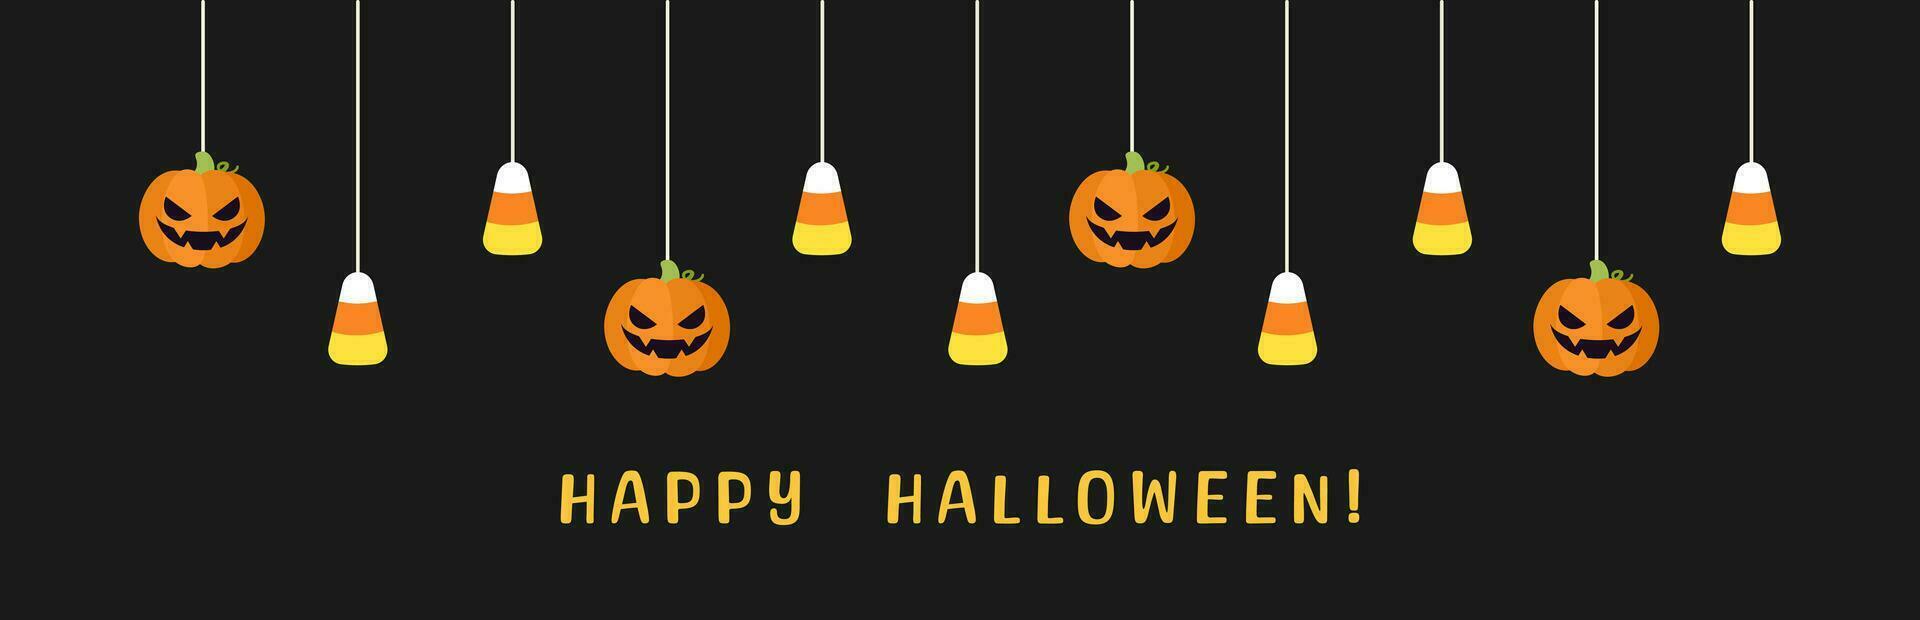 gelukkig halloween grens banier met snoep maïs en jack O lantaarn pompoenen hangende van spin webben. spookachtig ornamenten decoratie vector illustratie, truc of traktatie partij uitnodiging